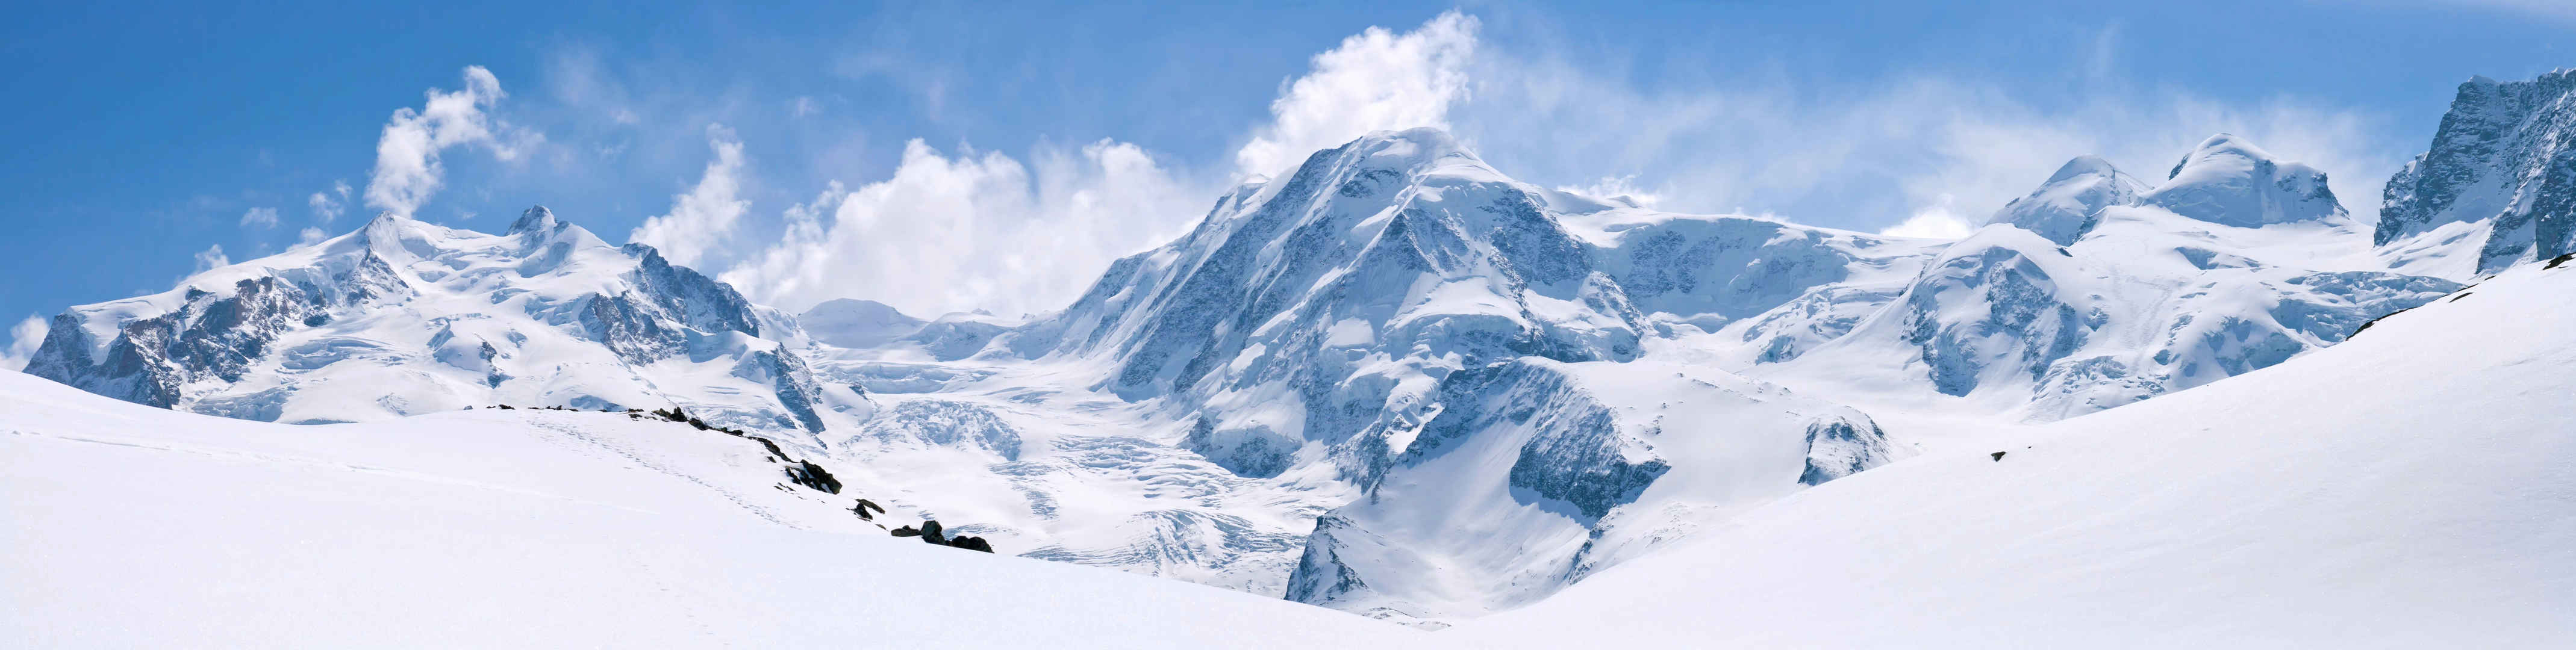 马特洪峰峰值阿尔卑斯山地区瑞士在蓝色天空全景